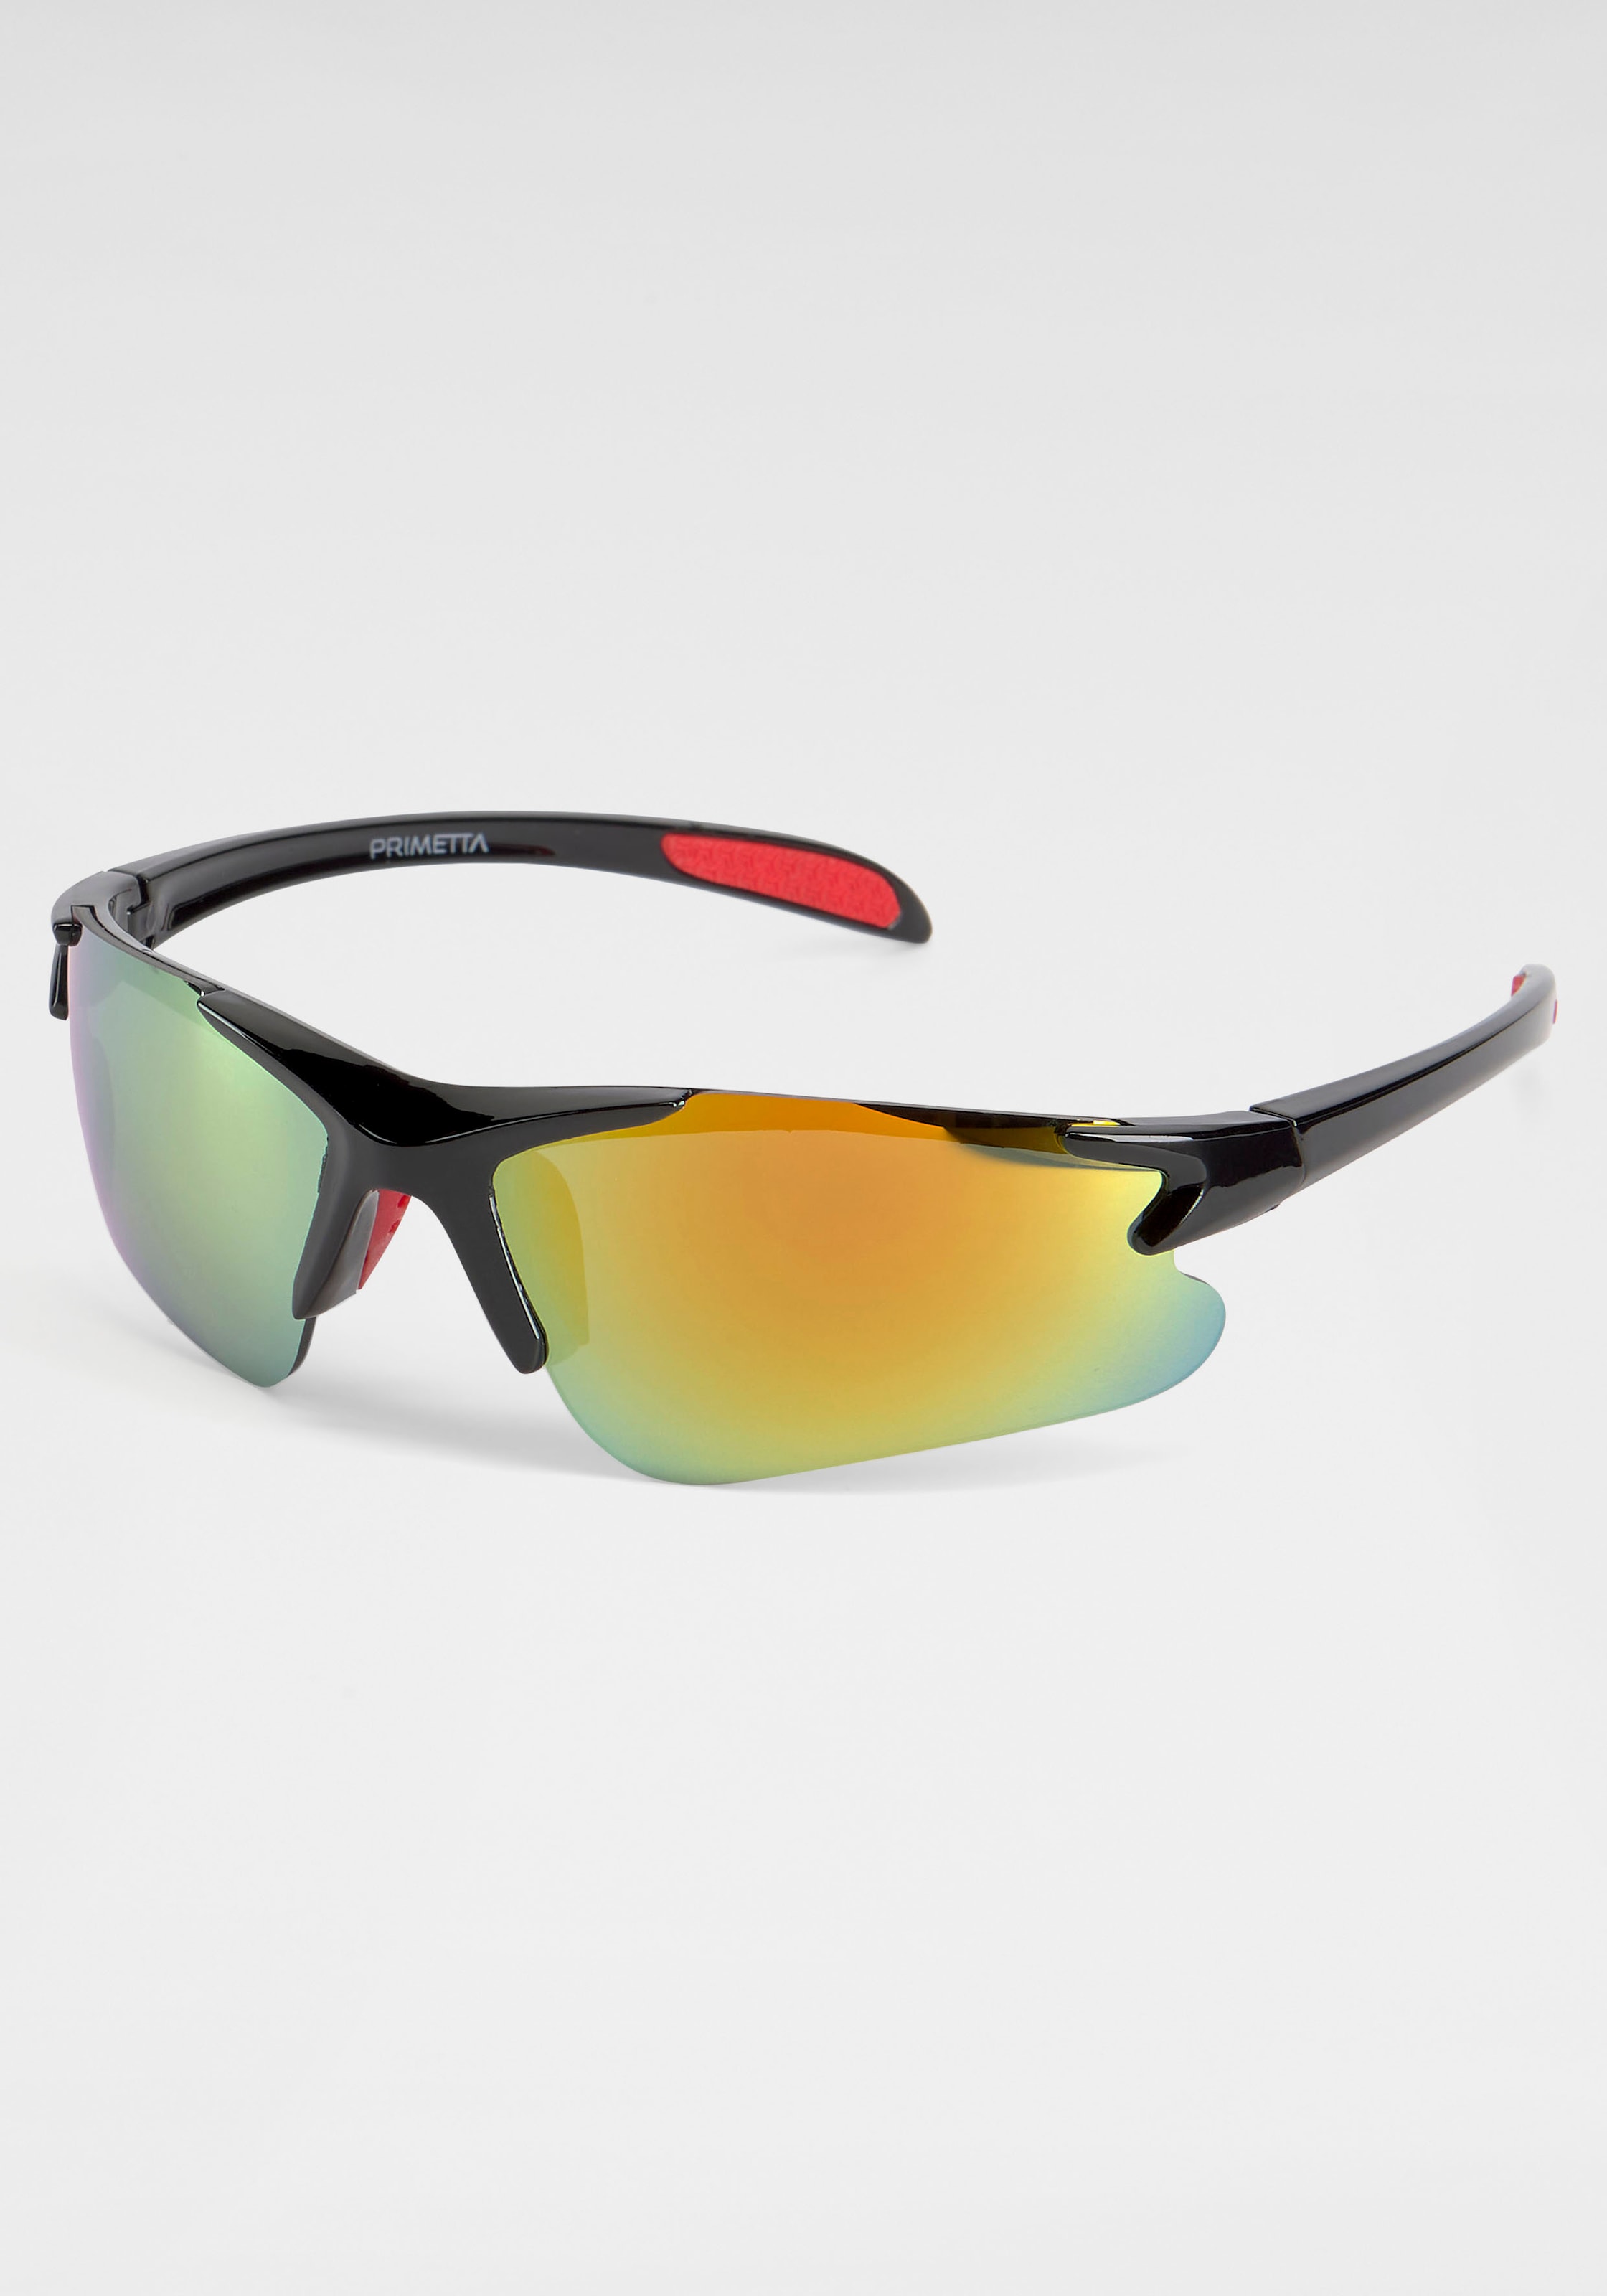 PRIMETTA Eyewear Sonnenbrille, verspiegelten kaufen online mit Gläsern